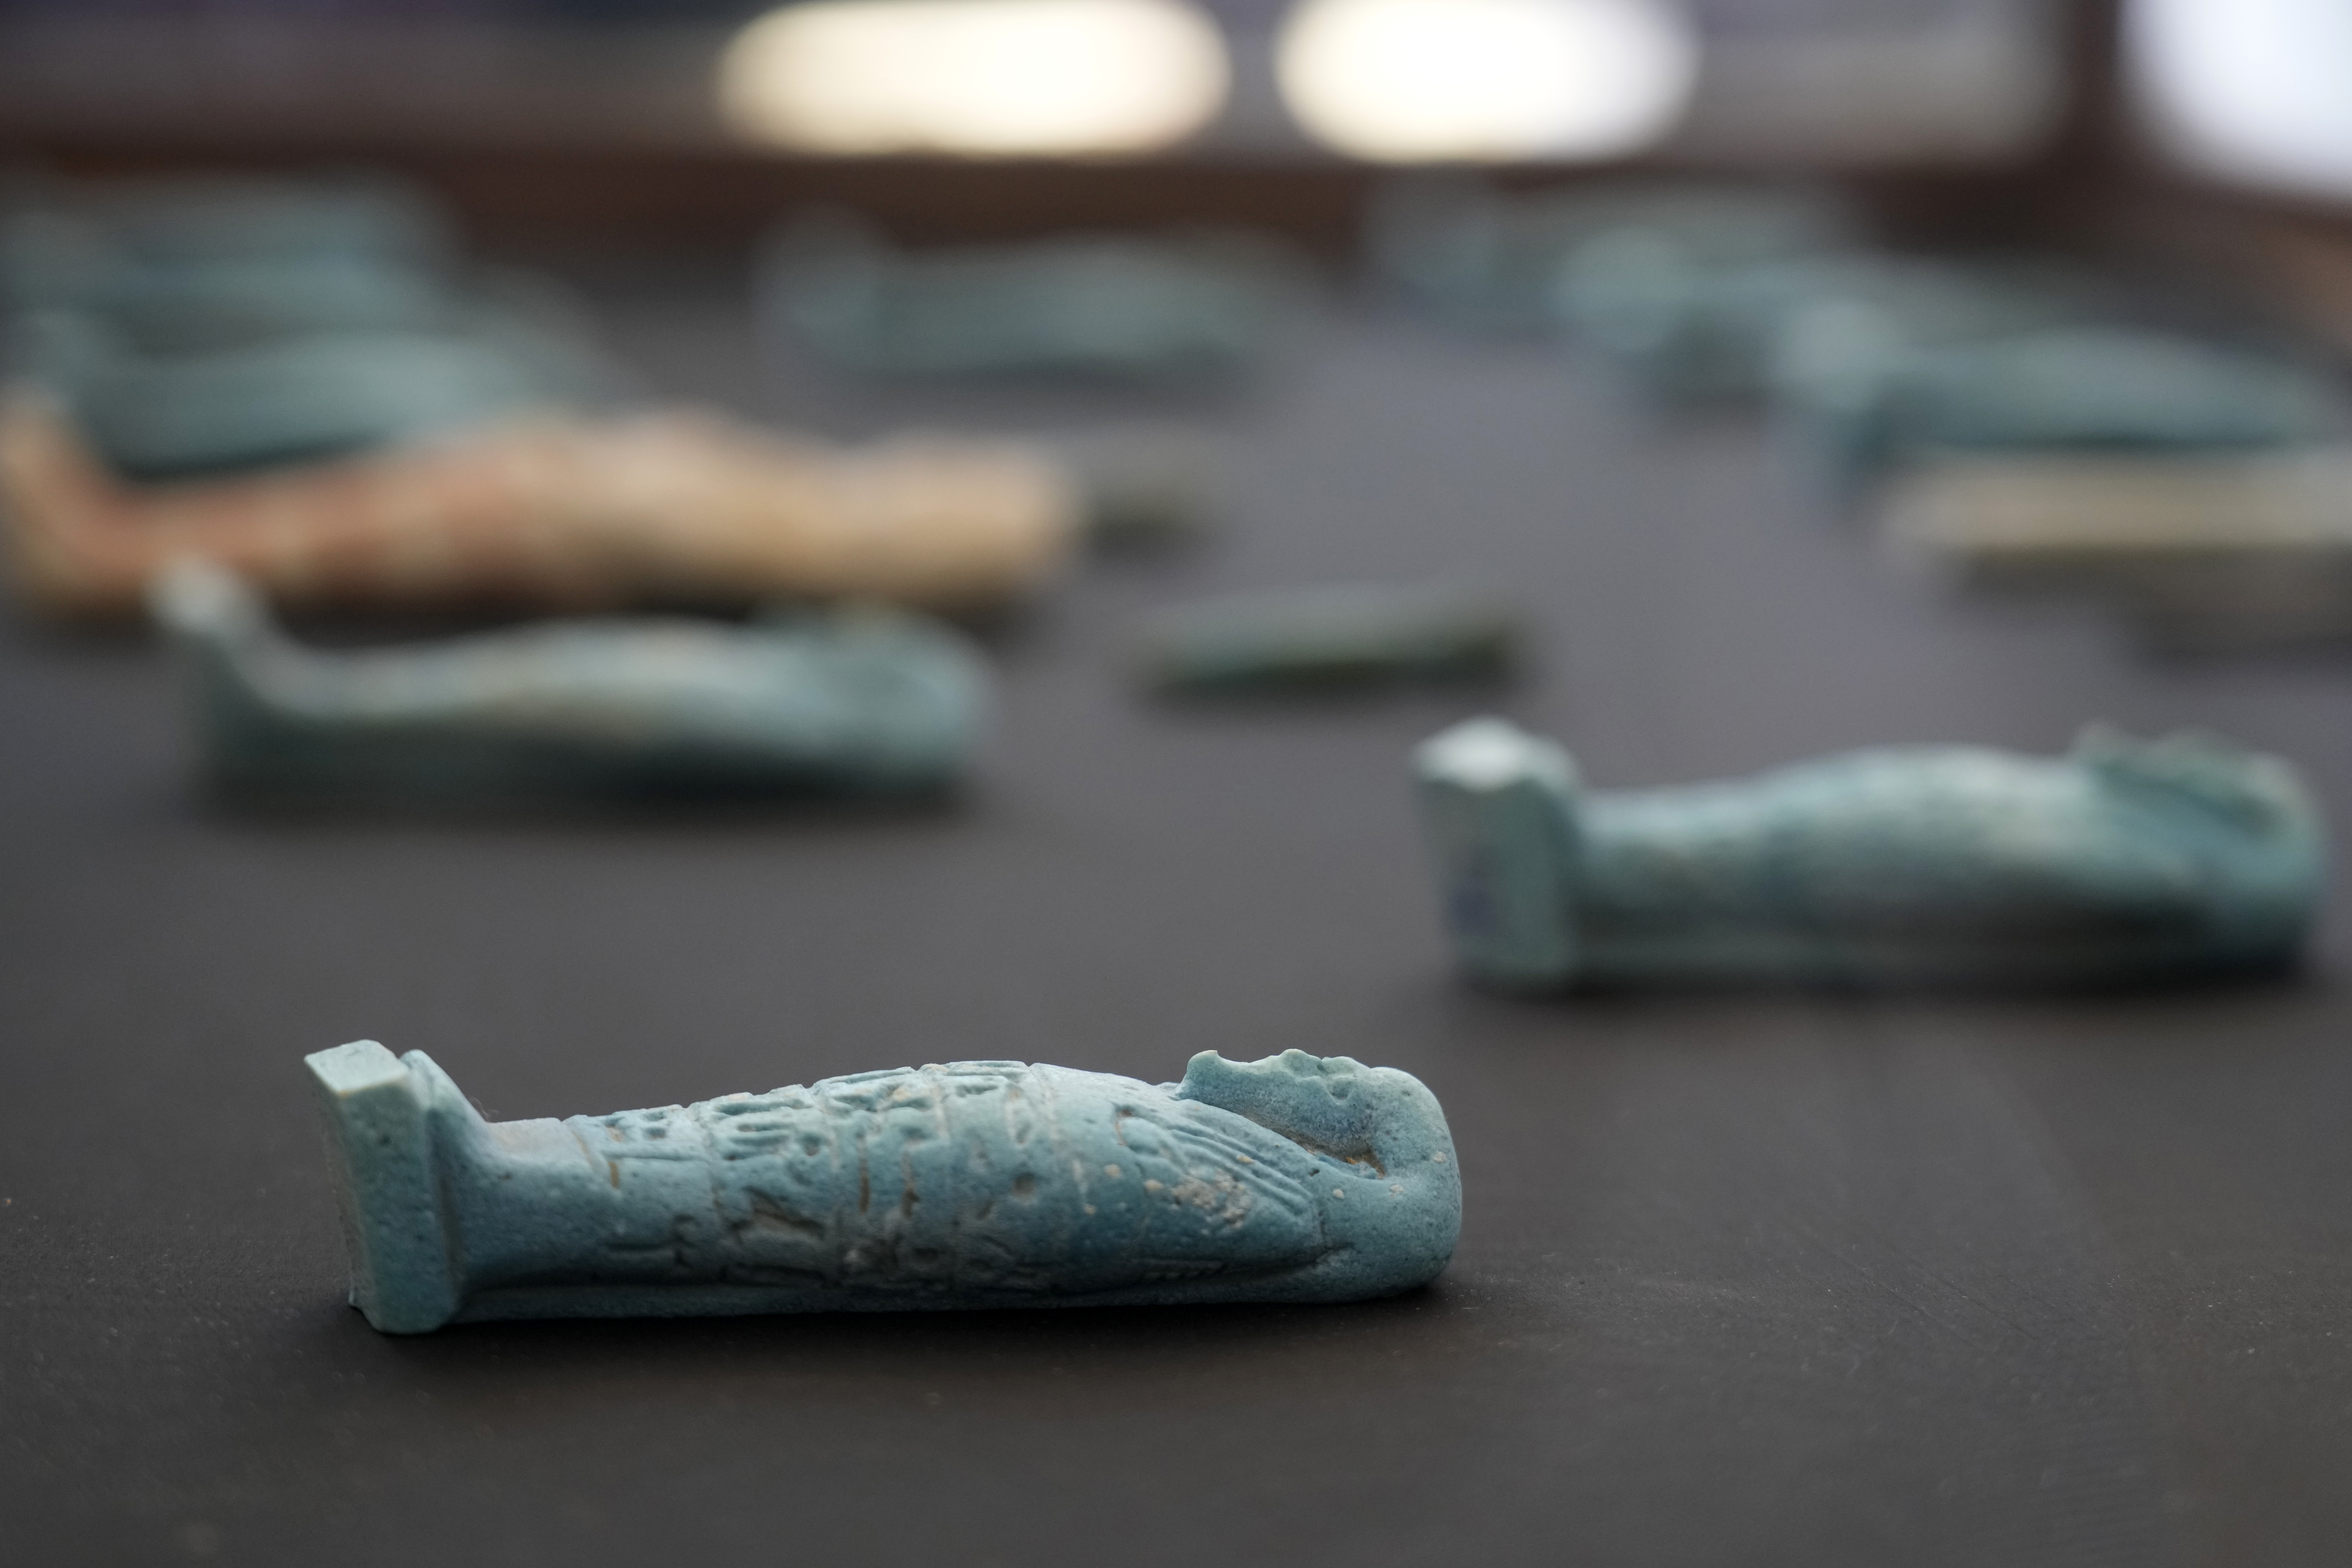 Los artefactos descubiertos recientemente se exhiben durante una conferencia de prensa (Foto AP/Amr Nabil)